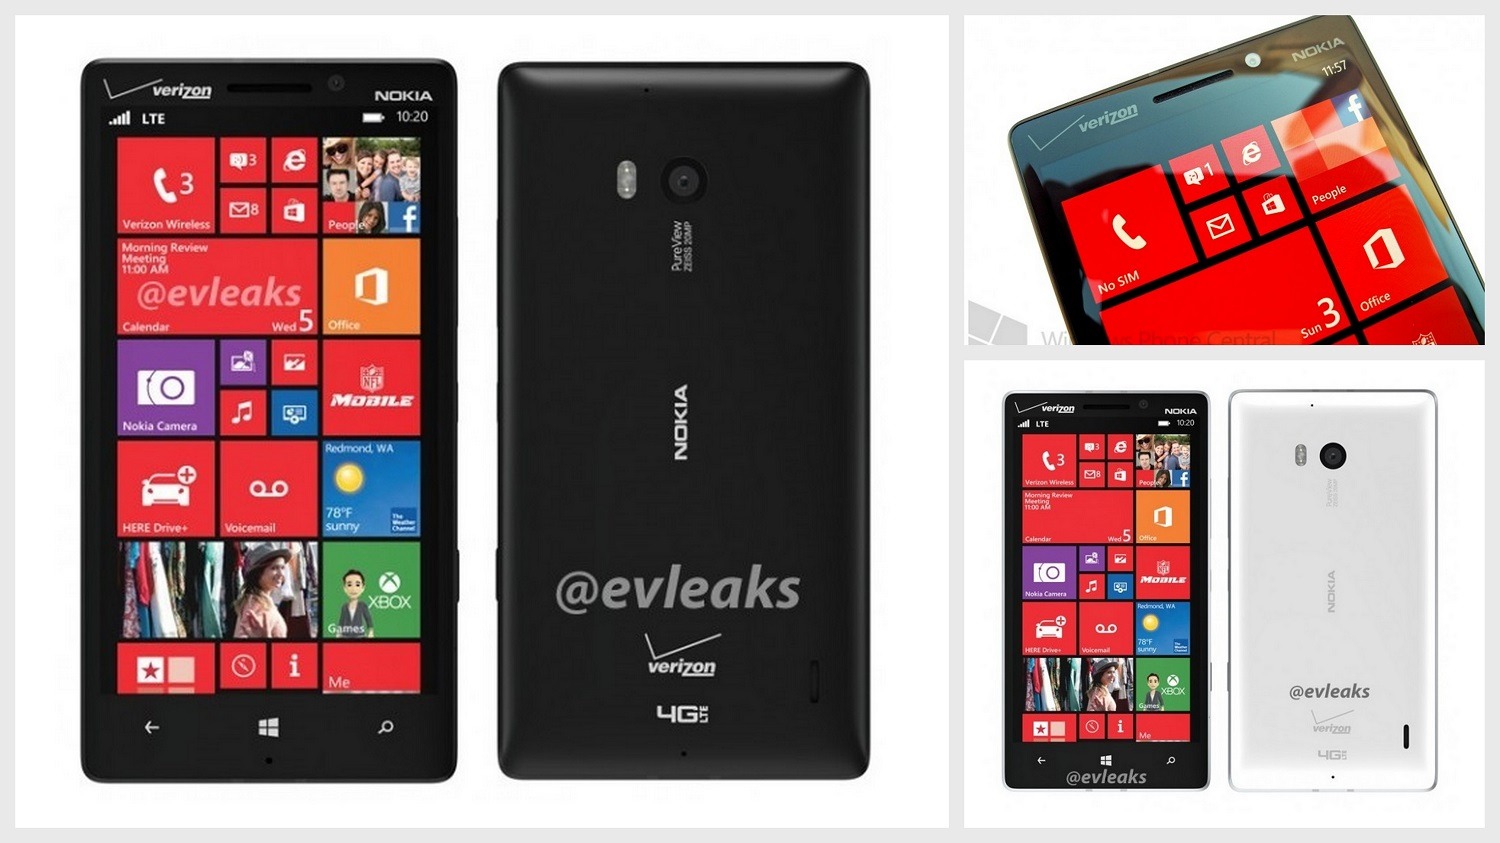 Upcoming smartphones Nokia 929